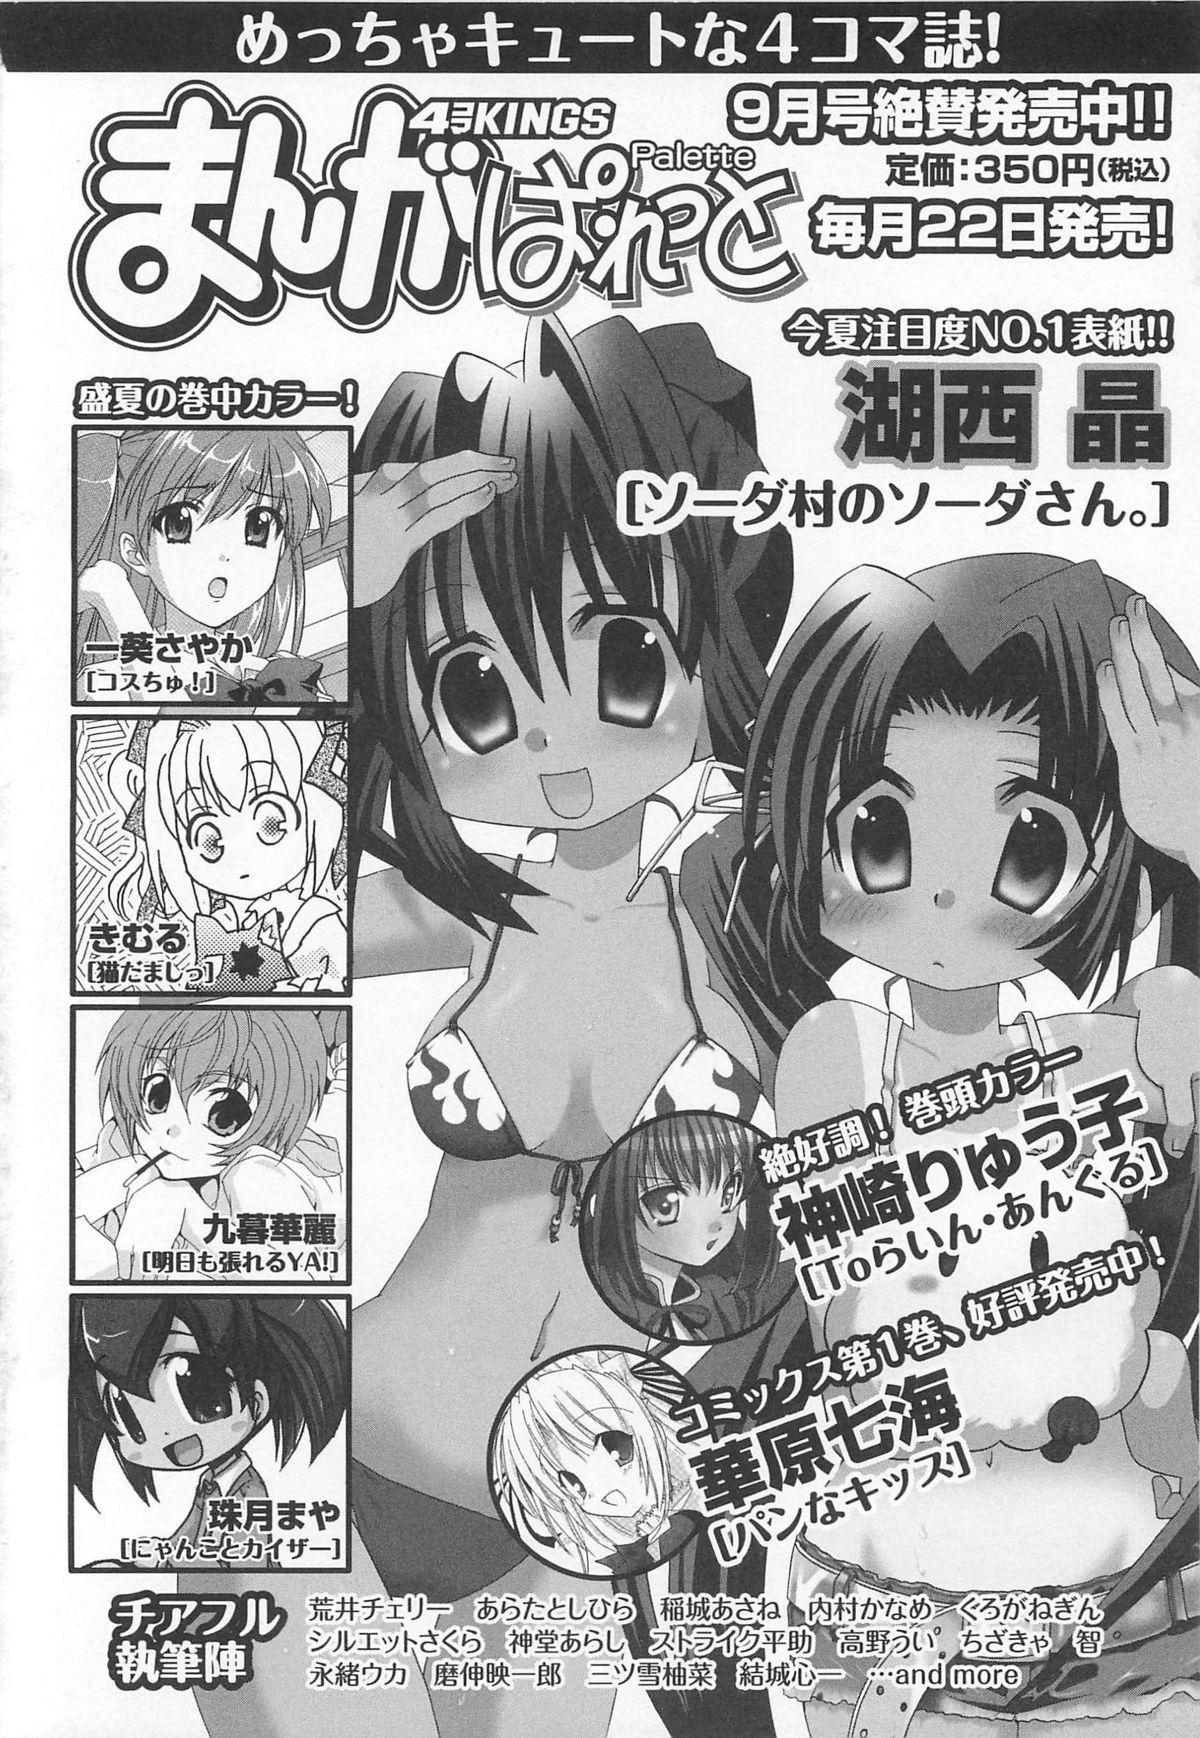 Choukou Sennin Haruka Comic Anthology Vol.2 156